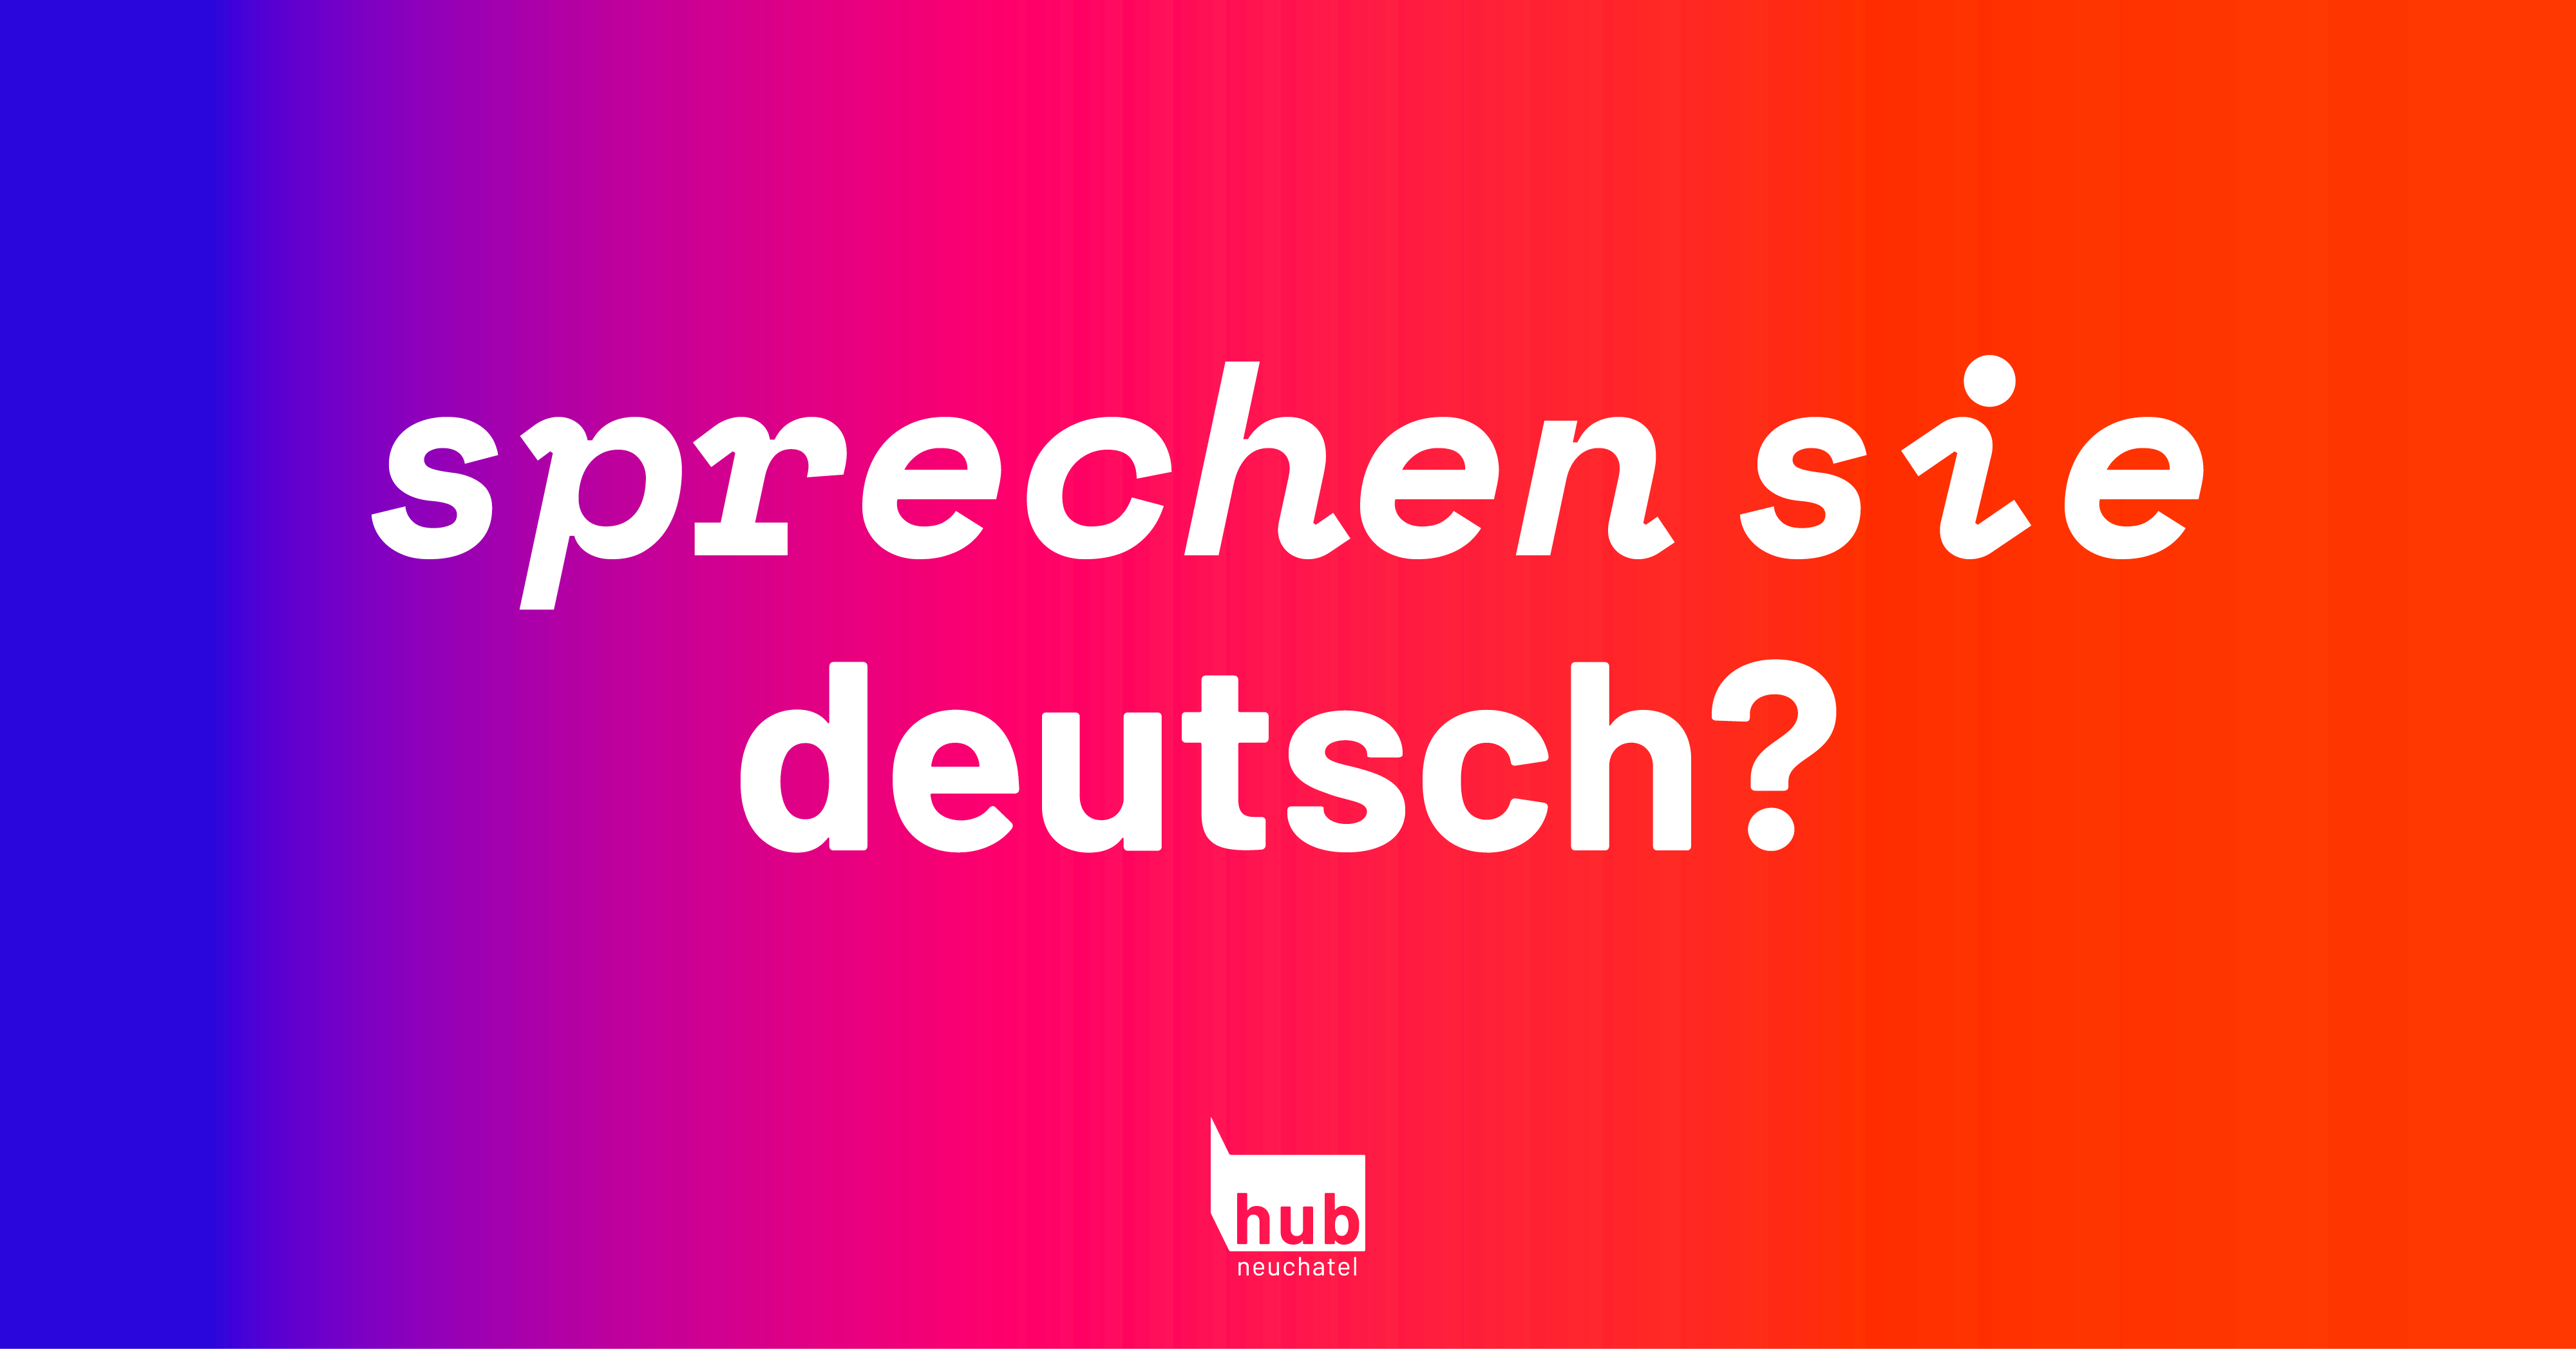 Sprechen Sie deutsch ?